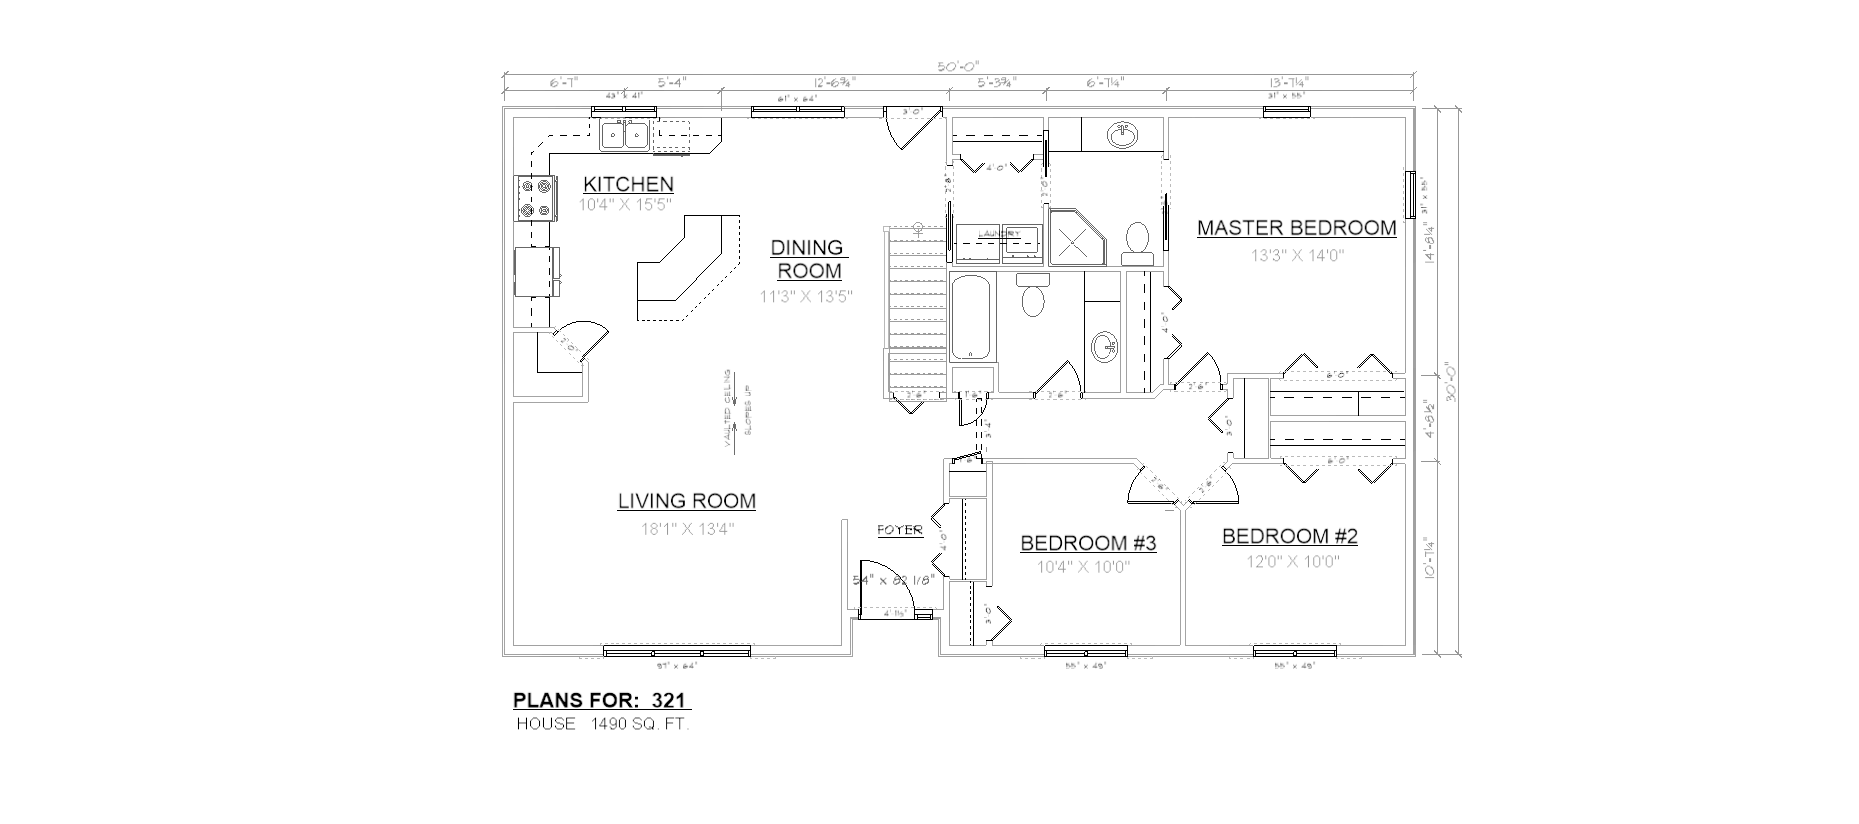 Penner Homes Floor Plan Id: 321